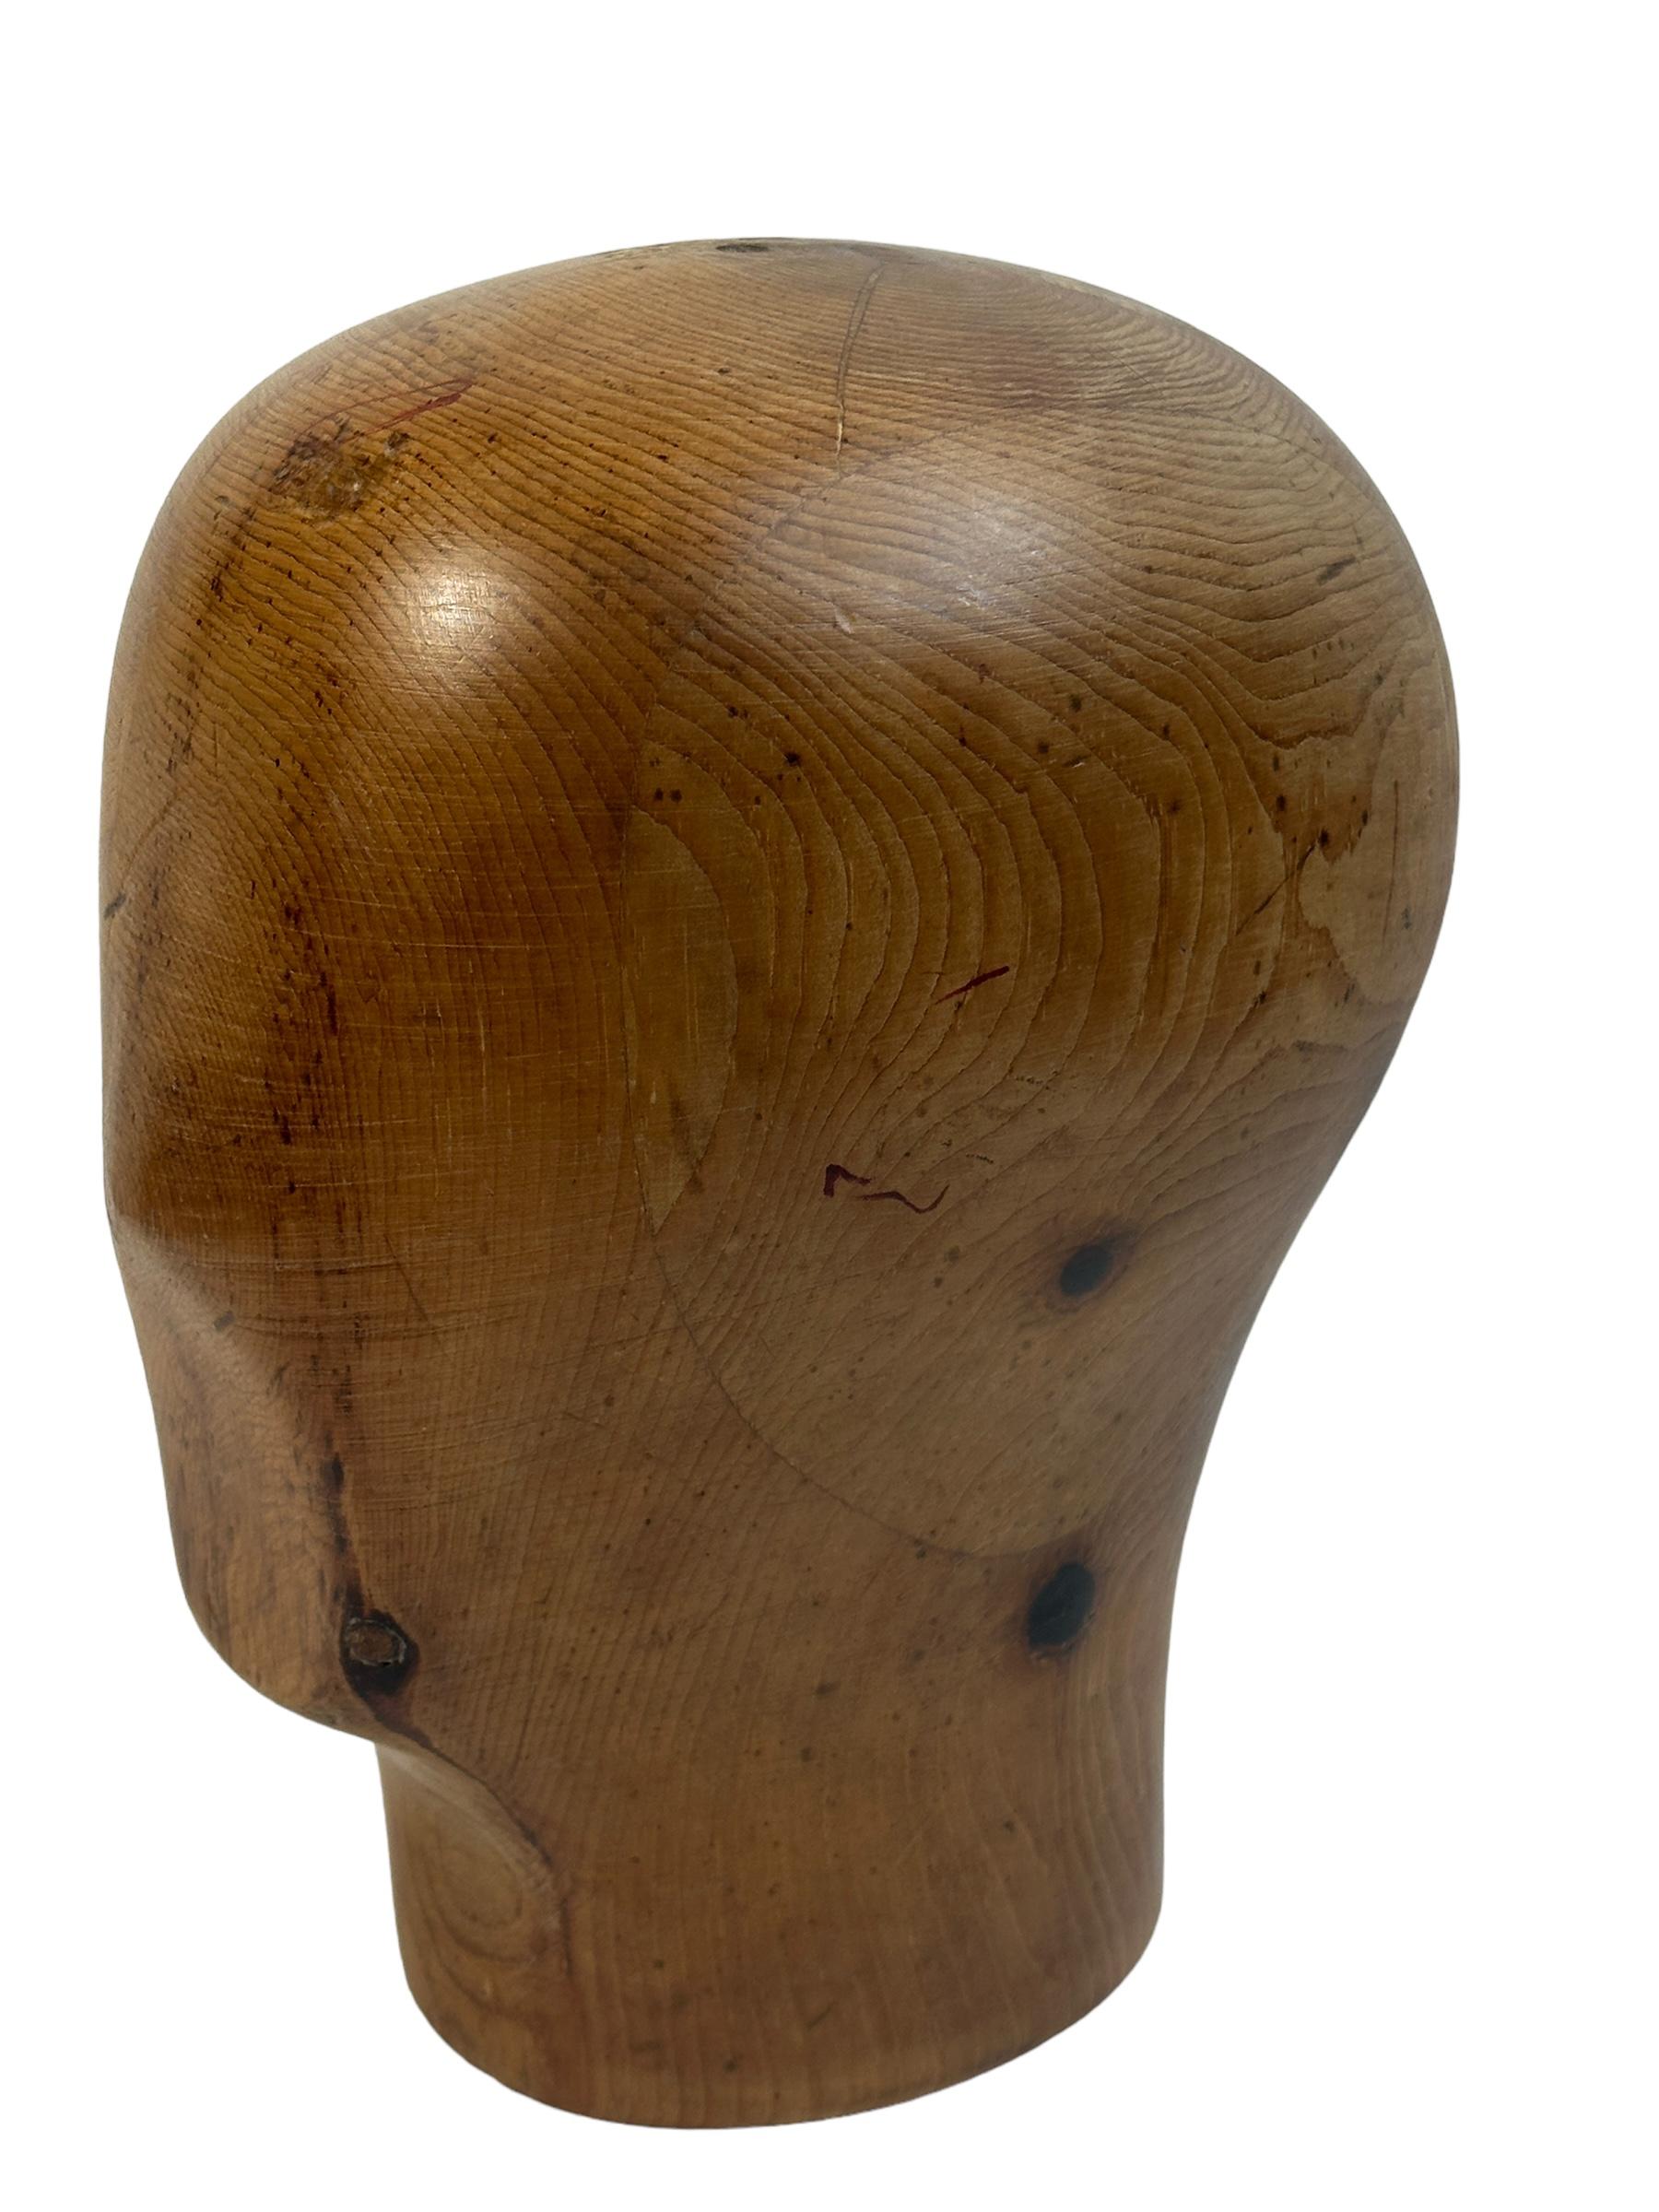 Adorable tête unique sculptée en bois. Italie, années 1930 ou plus anciennes. Objet de décoration idéal, utilisé dans la présentation et la fabrication de chapeaux. Sculptée à la main dans du bois. Belle pièce d'exposition dans n'importe quelle